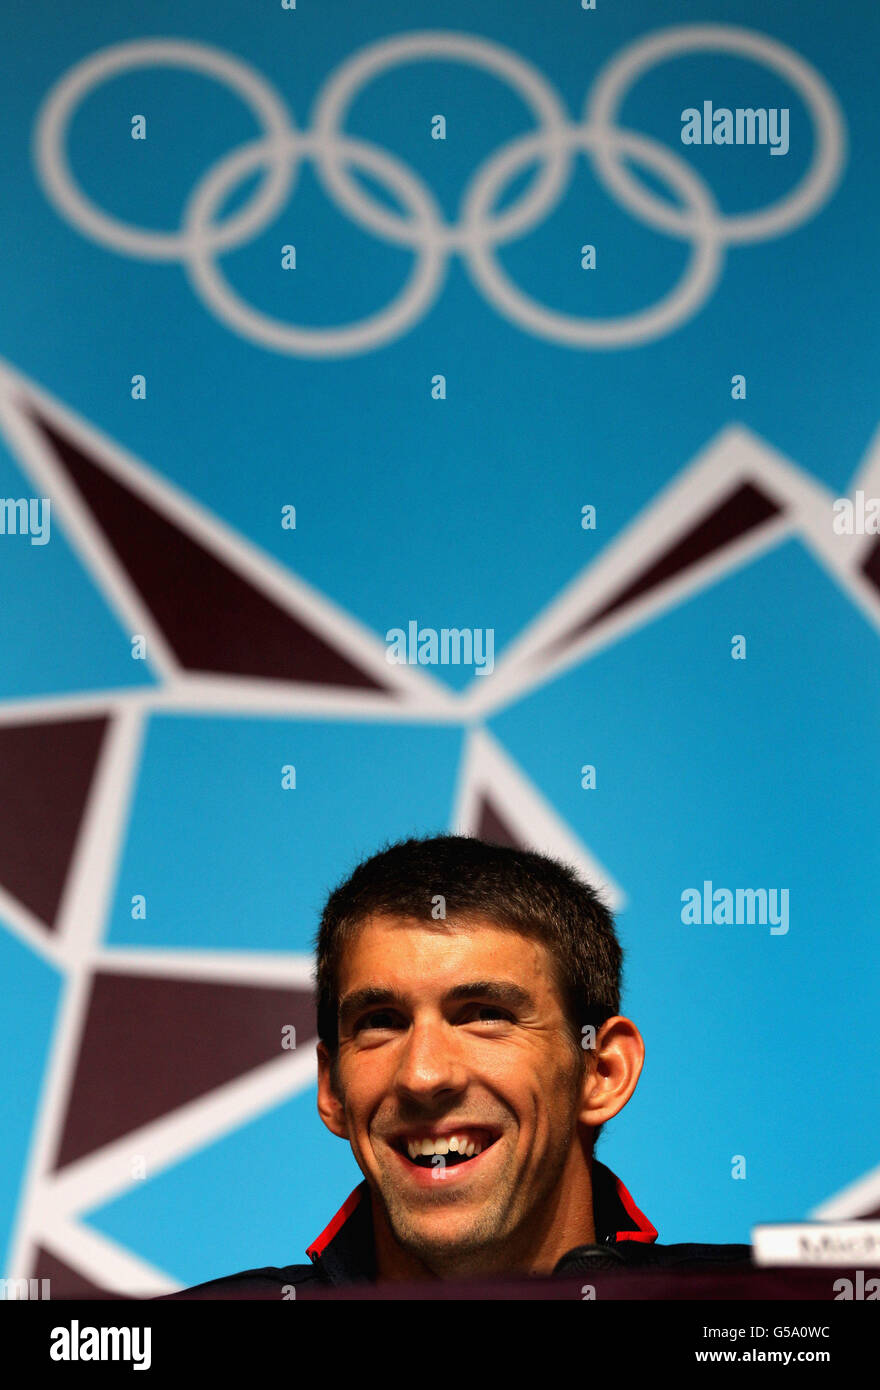 Olympische Spiele In London - Aktivitäten Vor Den Spielen - Donnerstag. Der US-Schwimmer Michael Phelps bei der Pressekonferenz im MPC, Olympic Park, London. Stockfoto